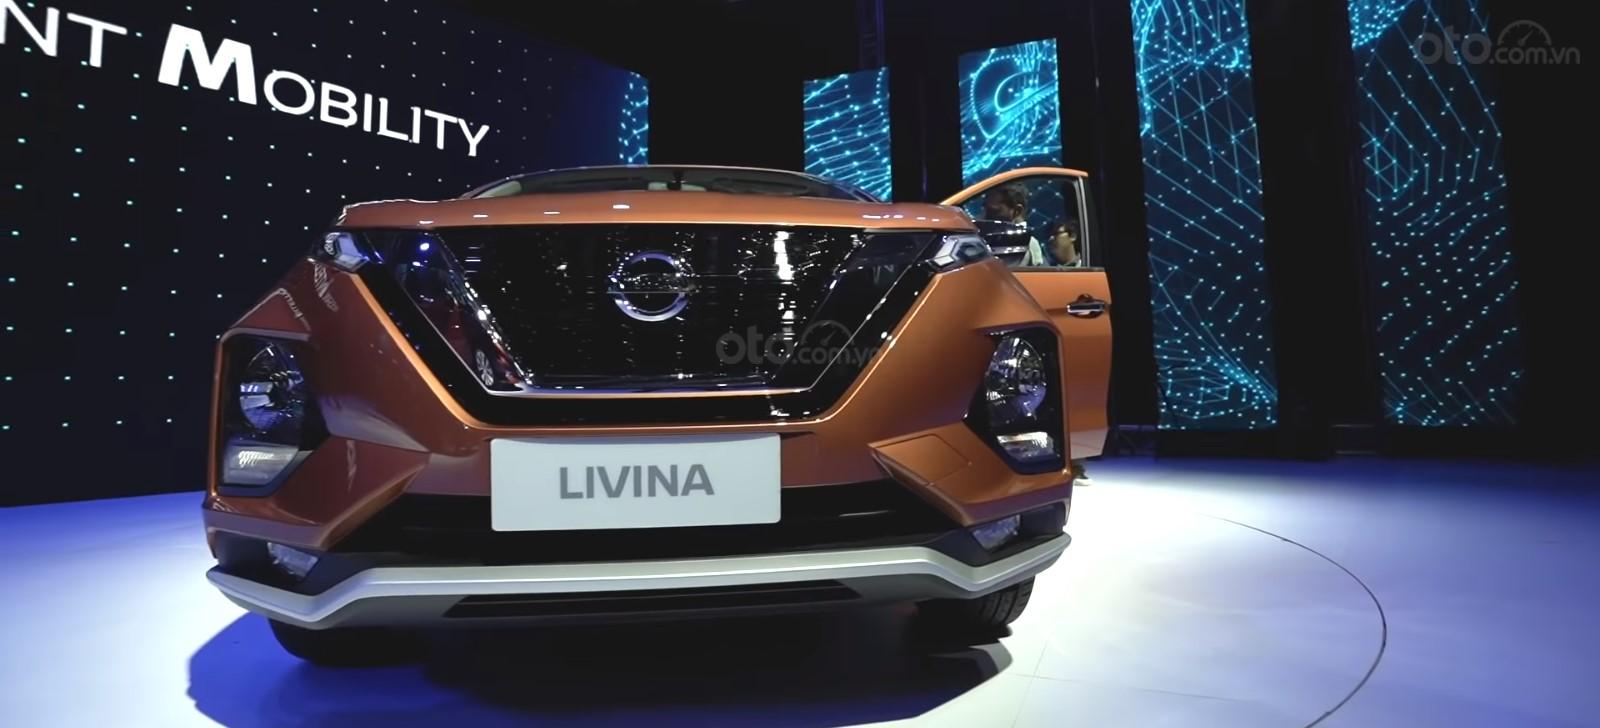 Ảnh chụp đầu xe Nissan Grand Livina 2020 màu cam